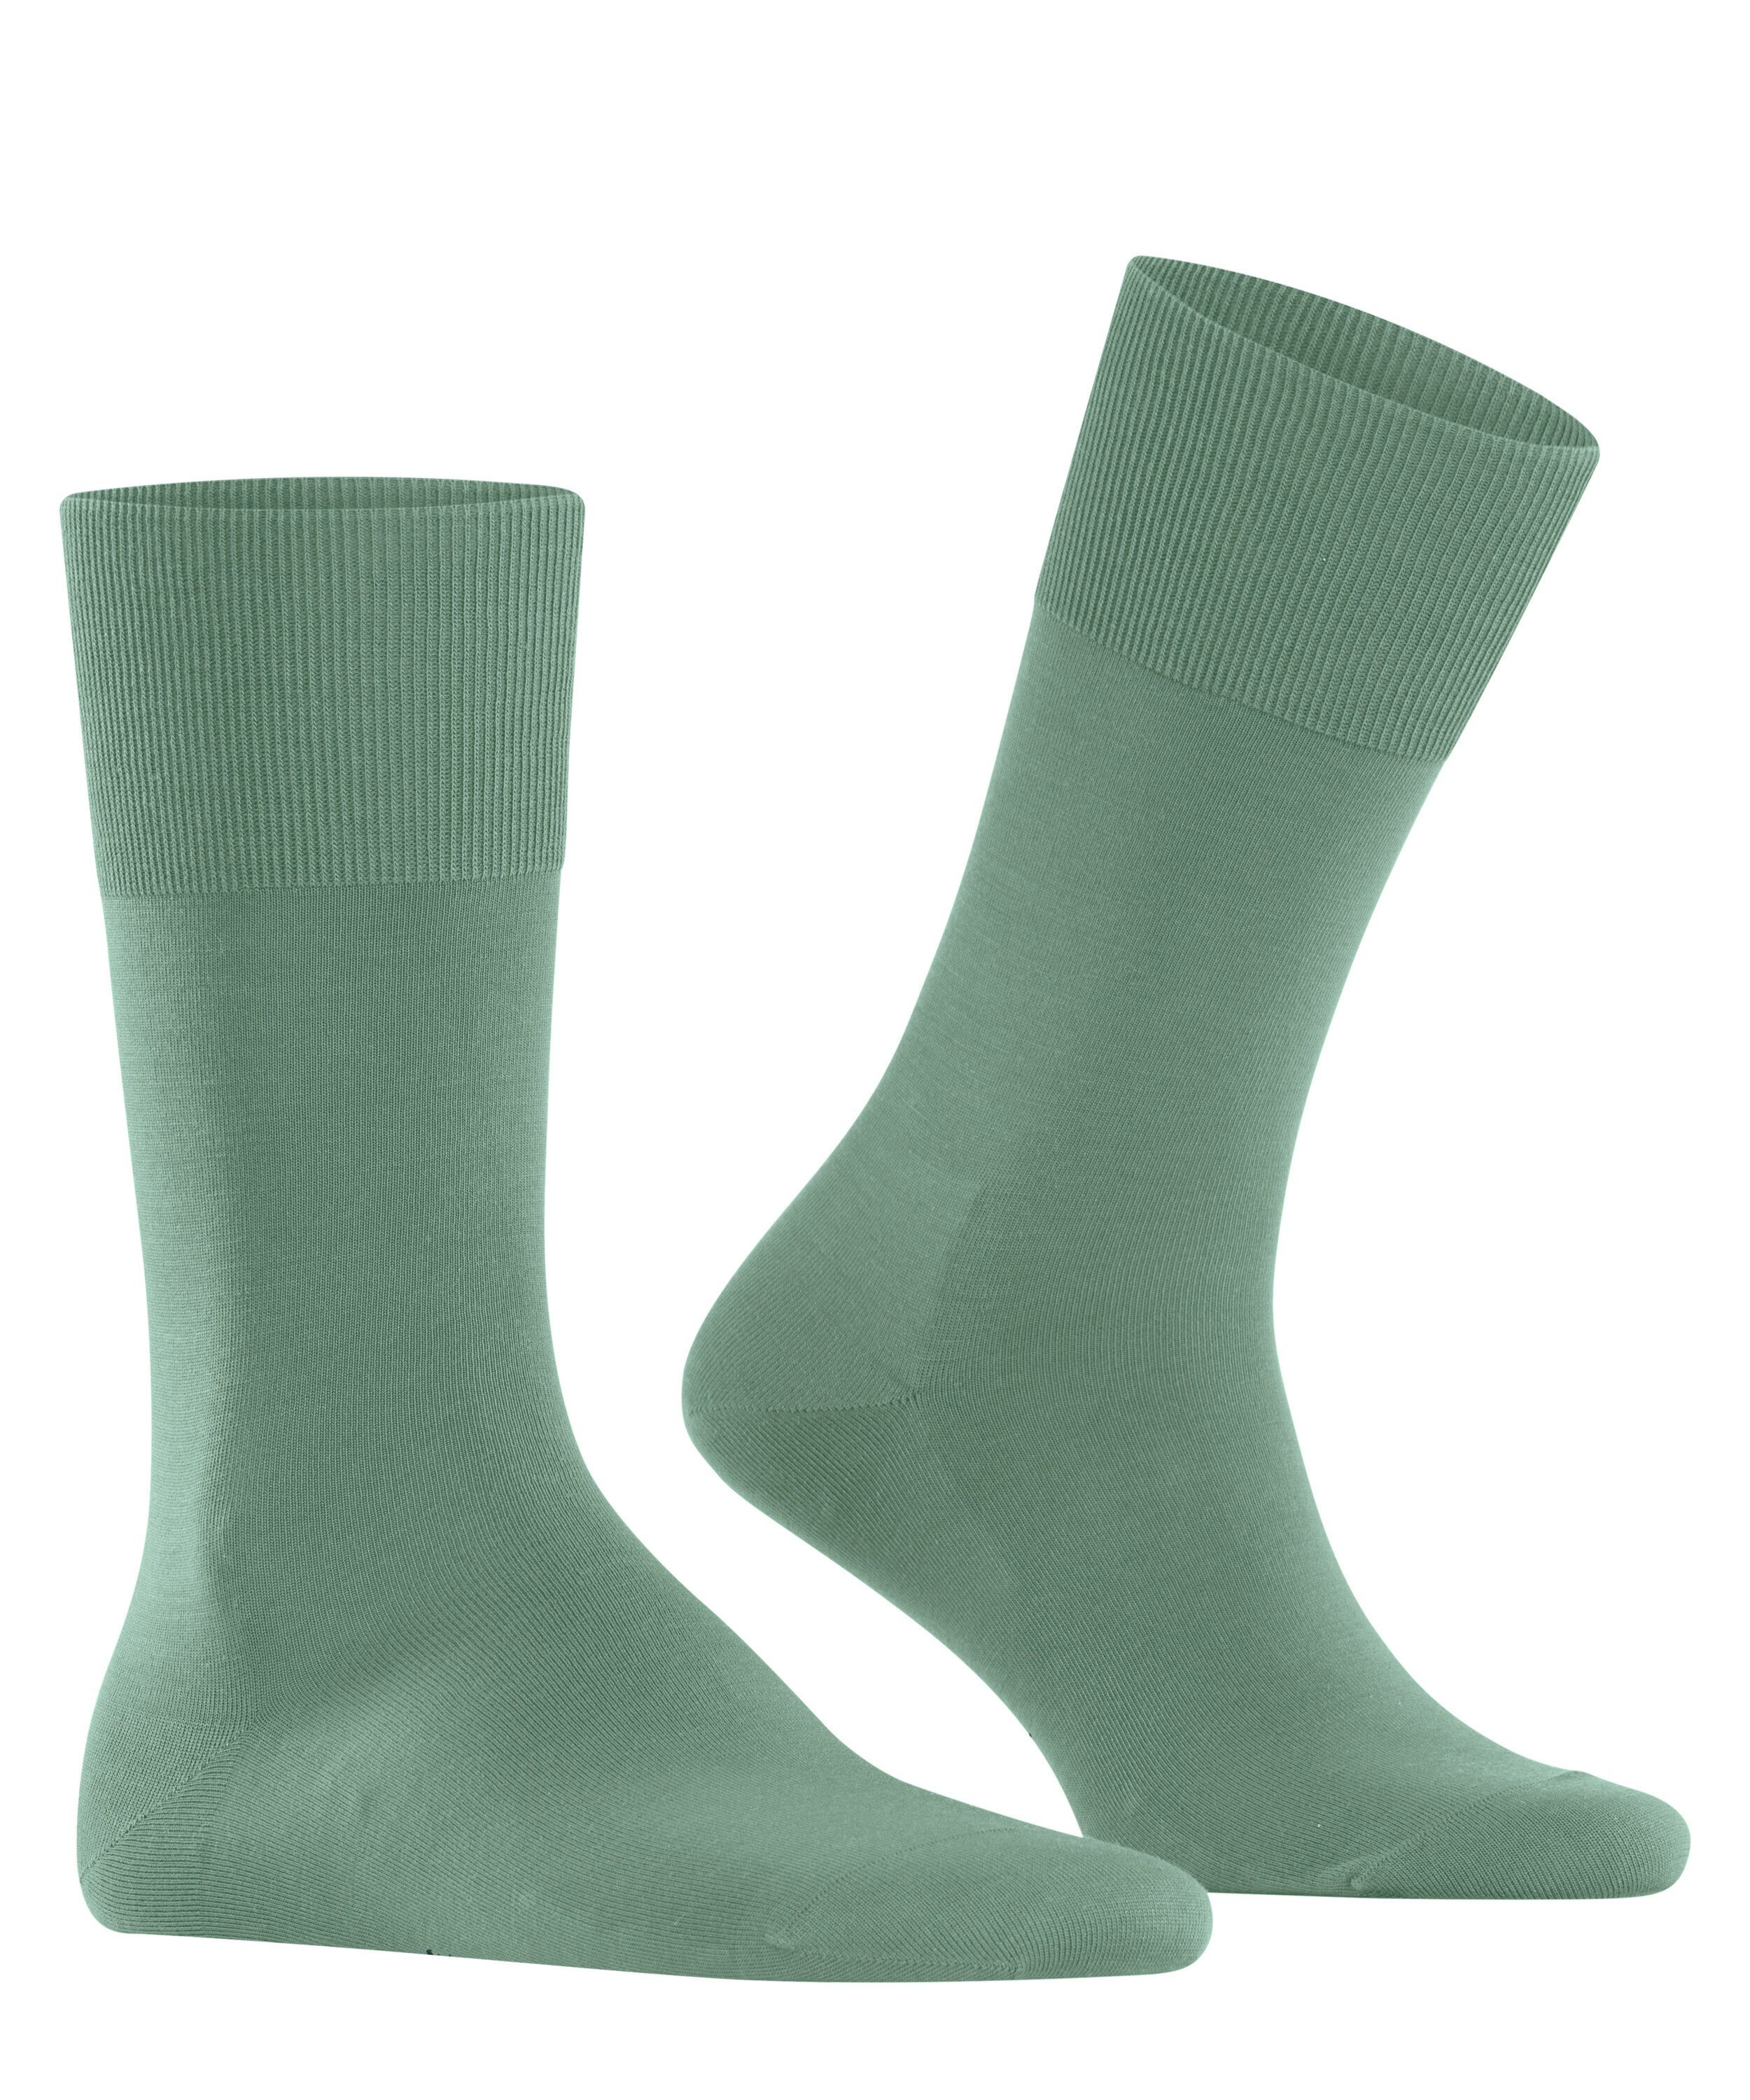 FALKE Socken (7538) ClimaWool (1-Paar) sage